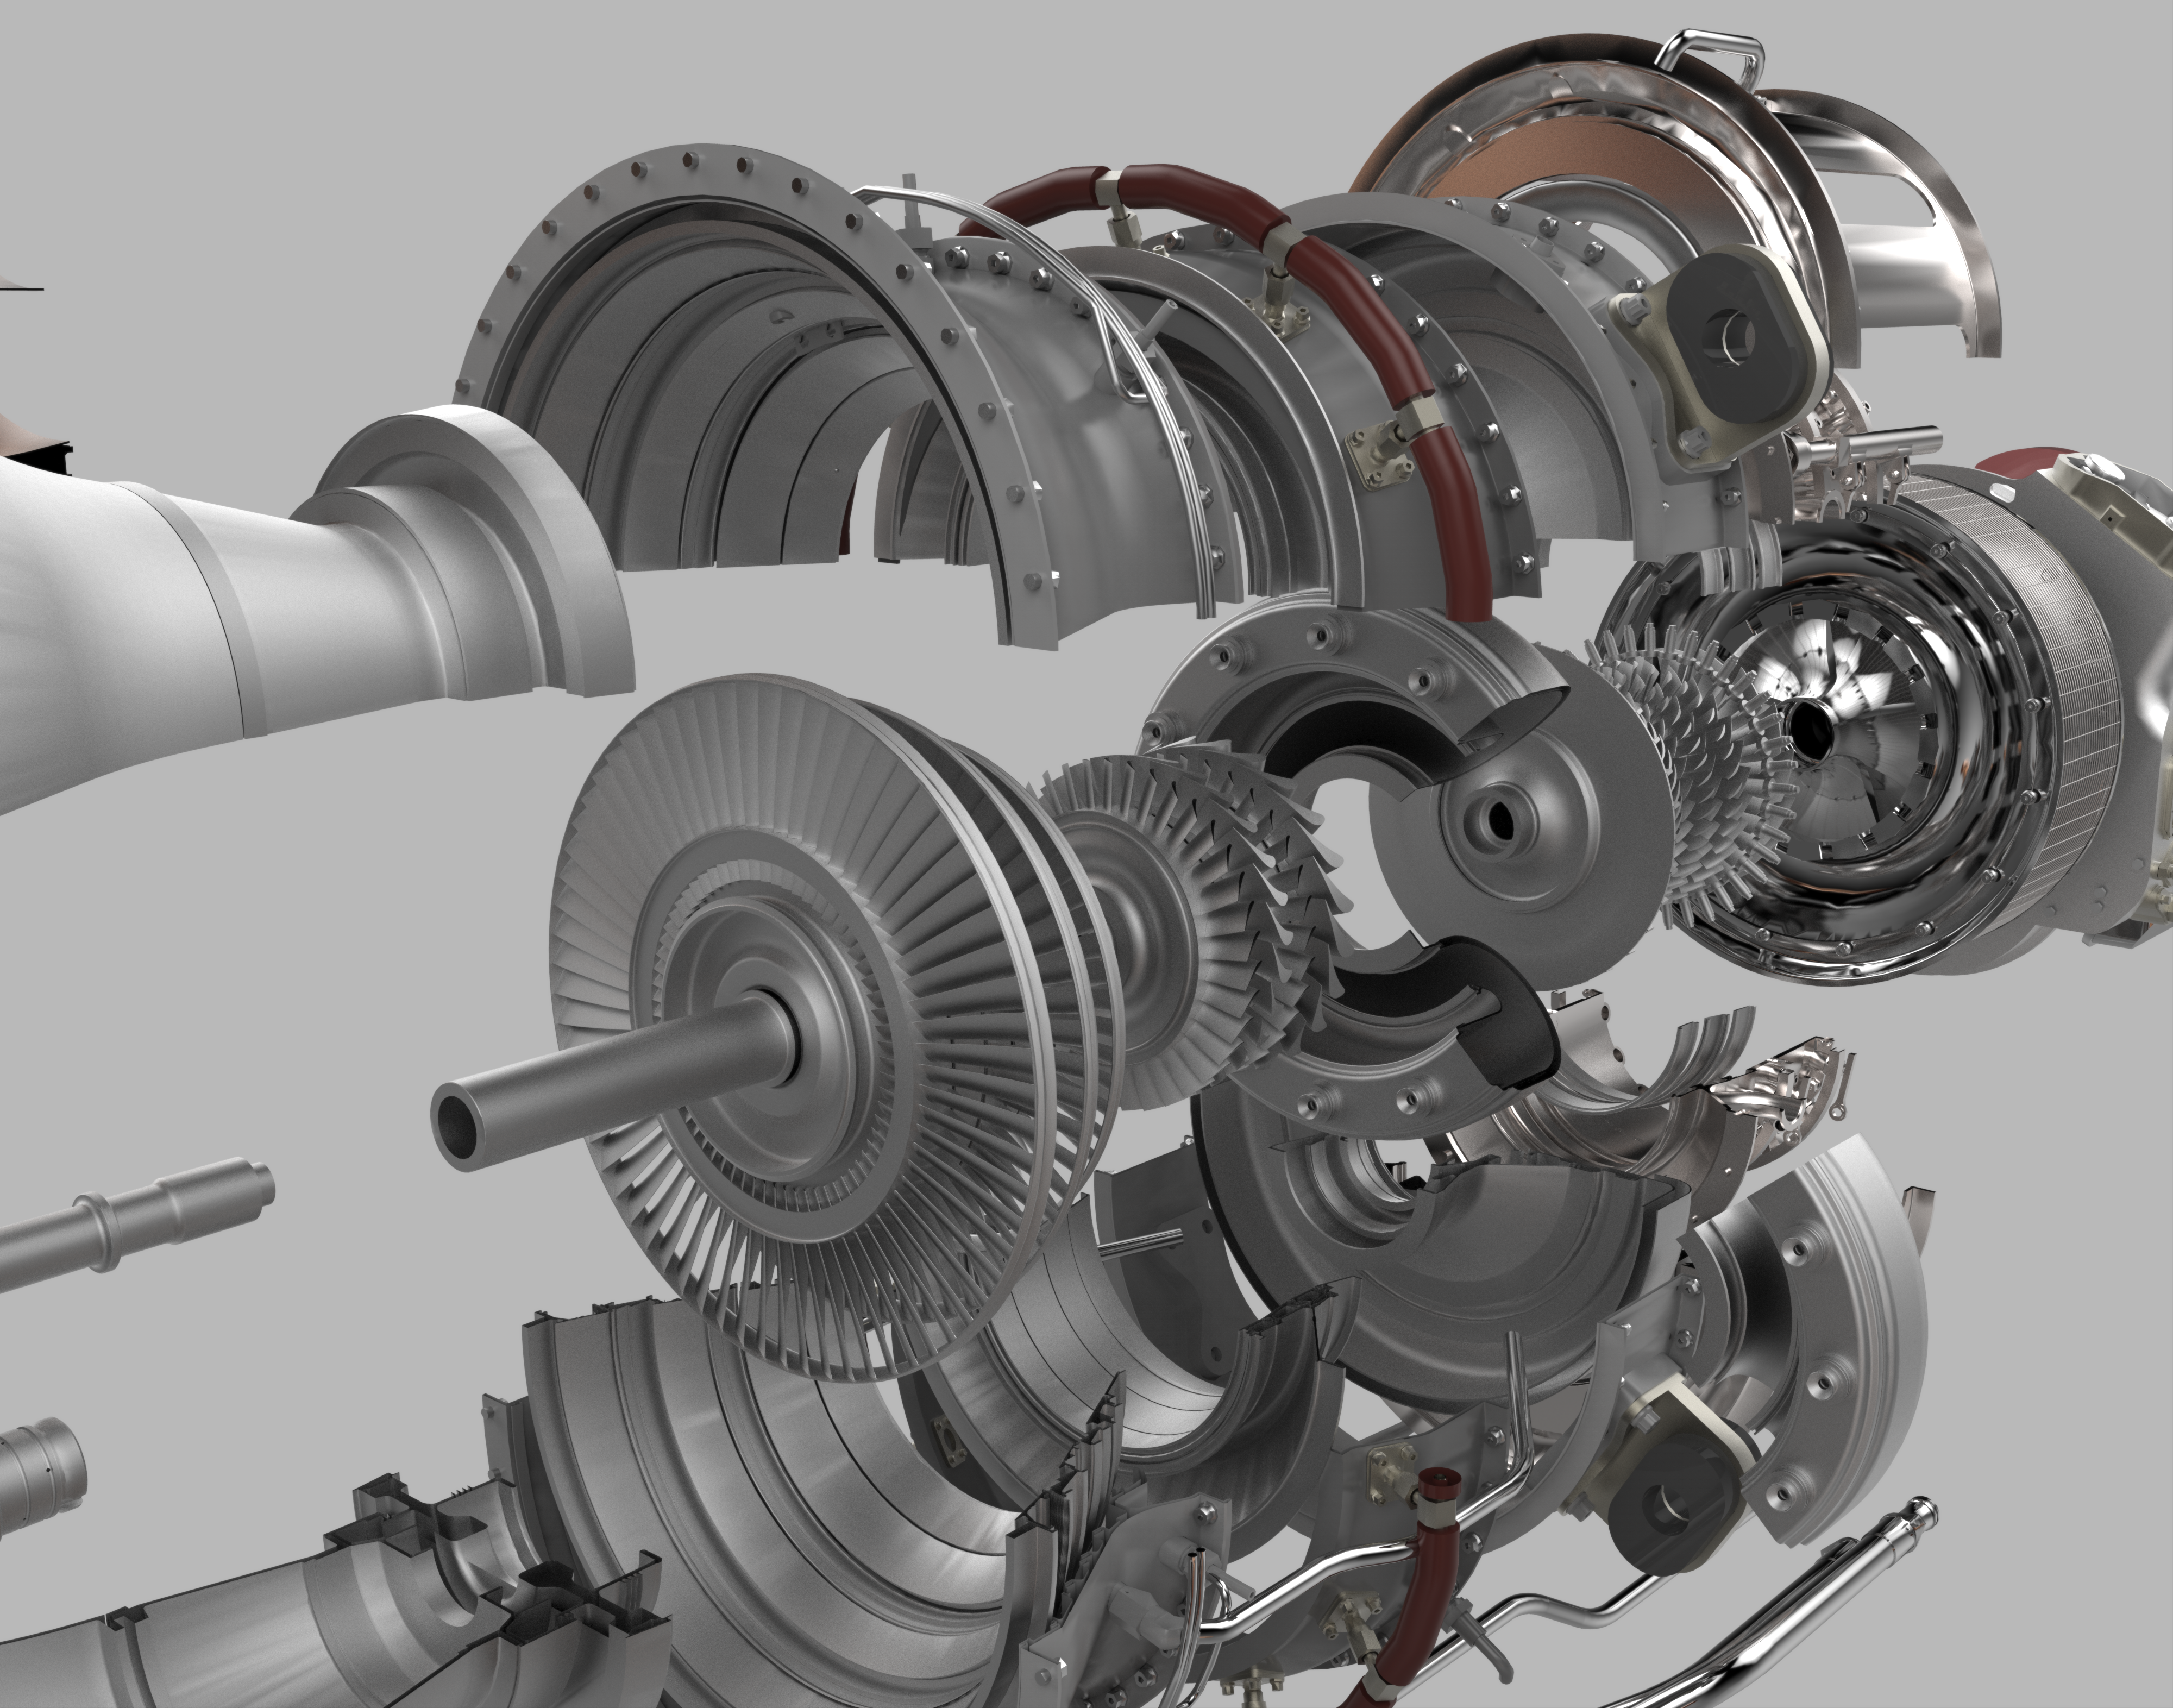 Деталь турбины 6 букв. Pratt & Whitney f135. Детали авиационного двигателя. Турбореактивный двигатель на 3d принтере. Элементы турбины авиадвигателя.